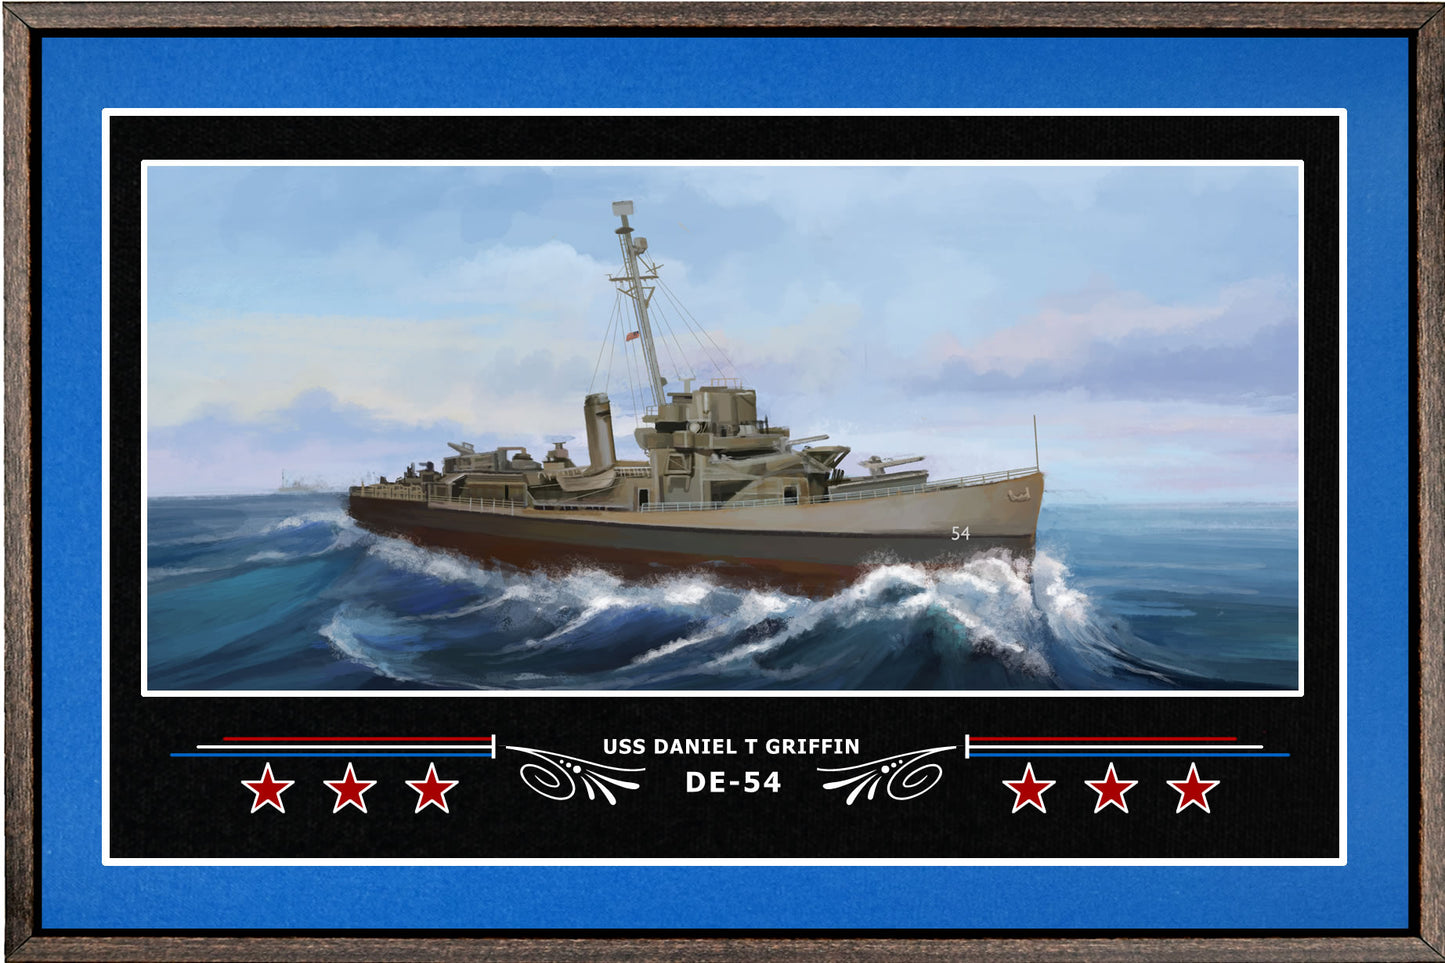 USS DANIEL T GRIFFIN DE 54 BOX FRAMED CANVAS ART BLUE